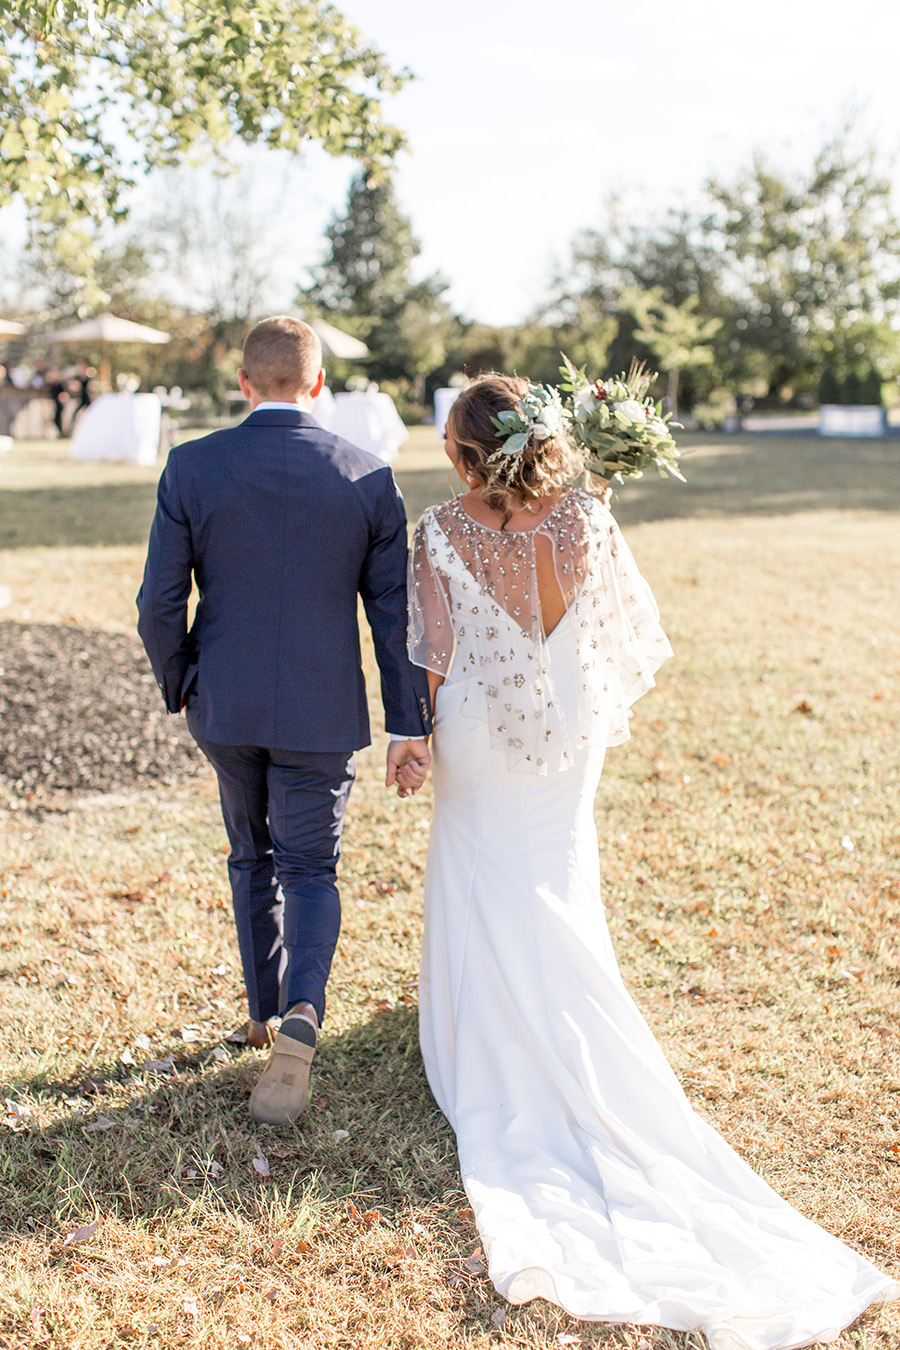 Bride and groom walk together after wedding ceremony